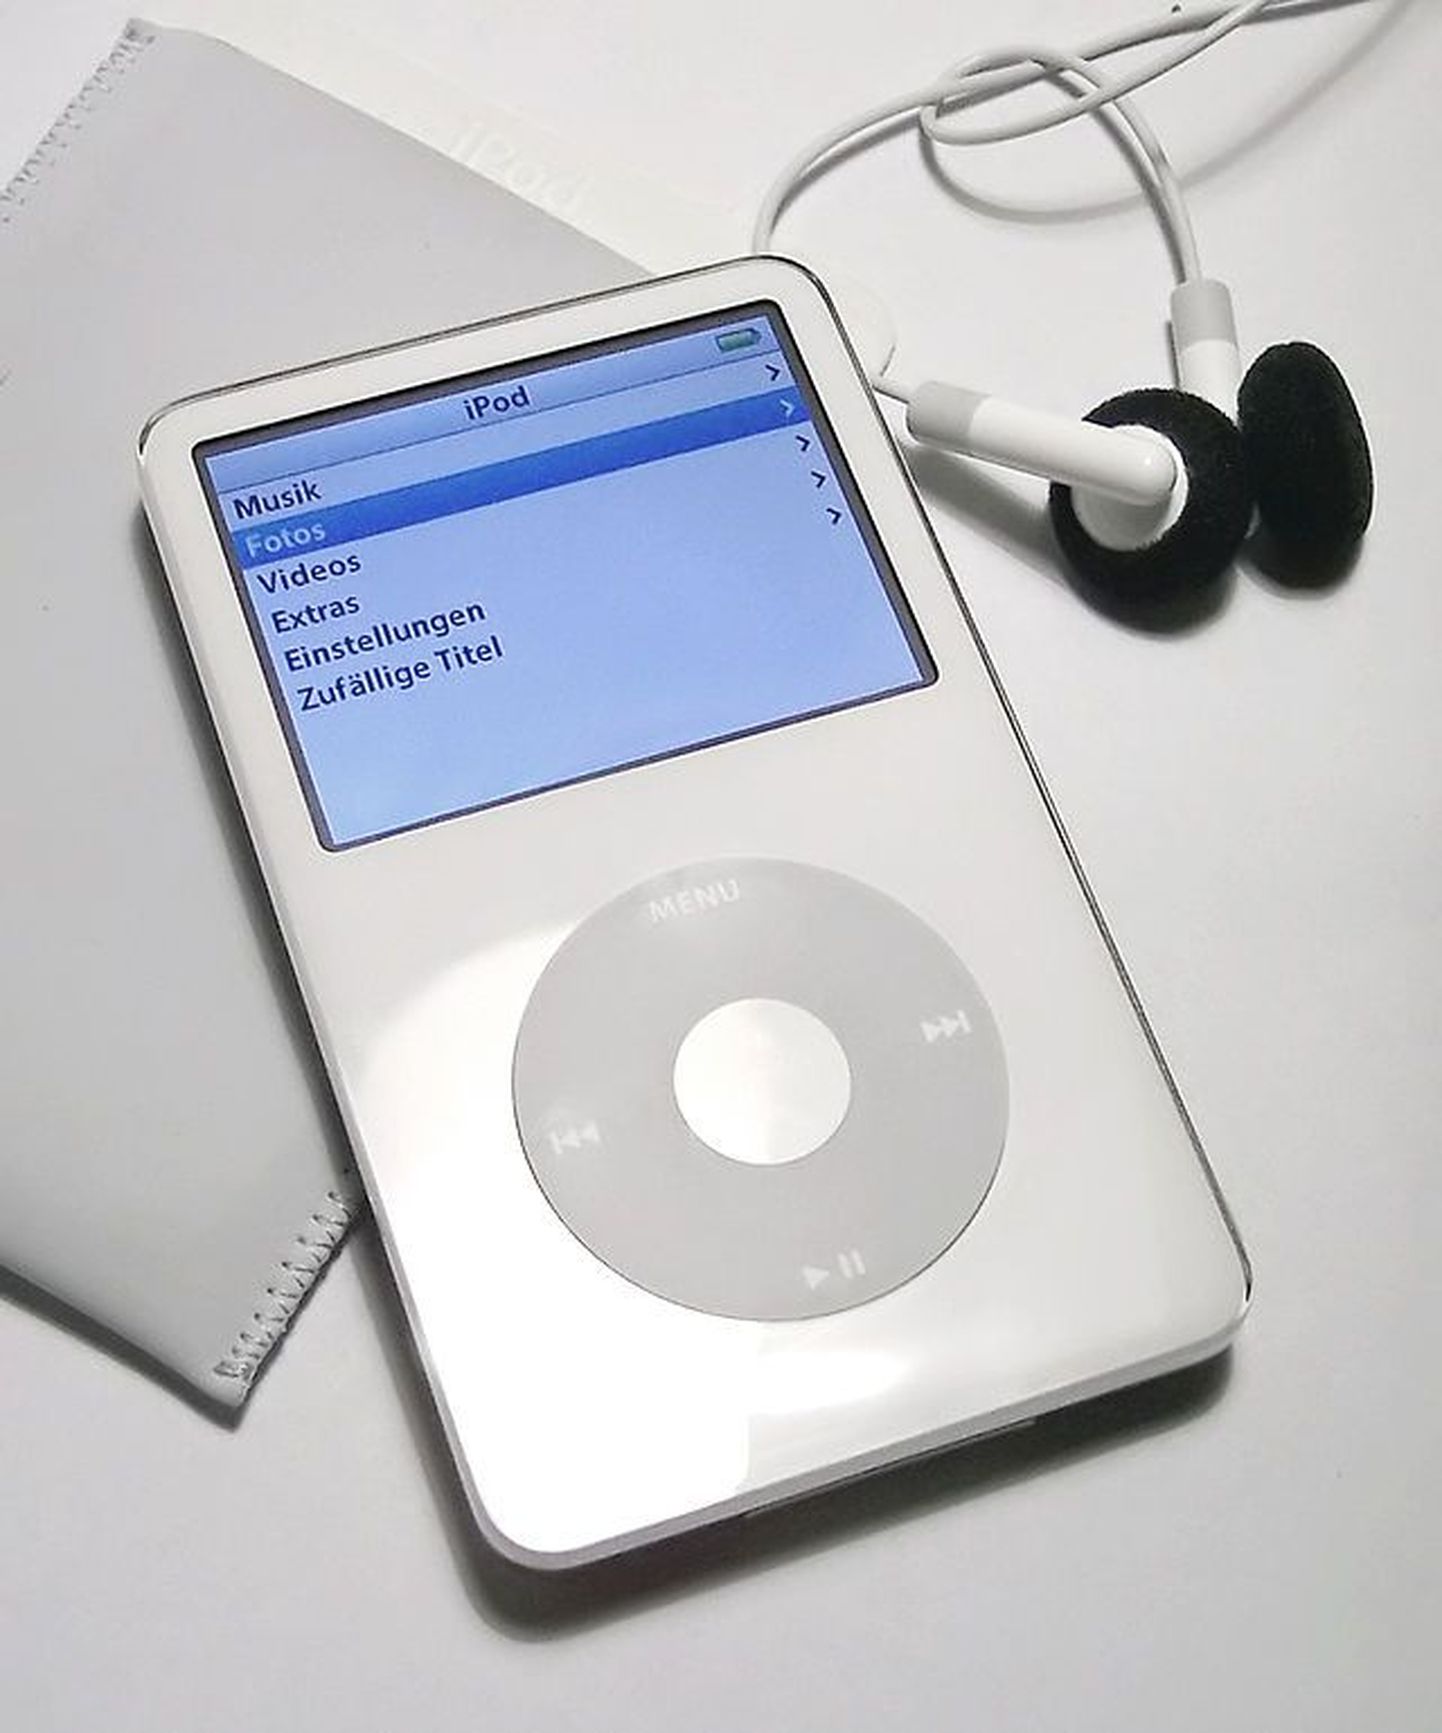 iPod classic.